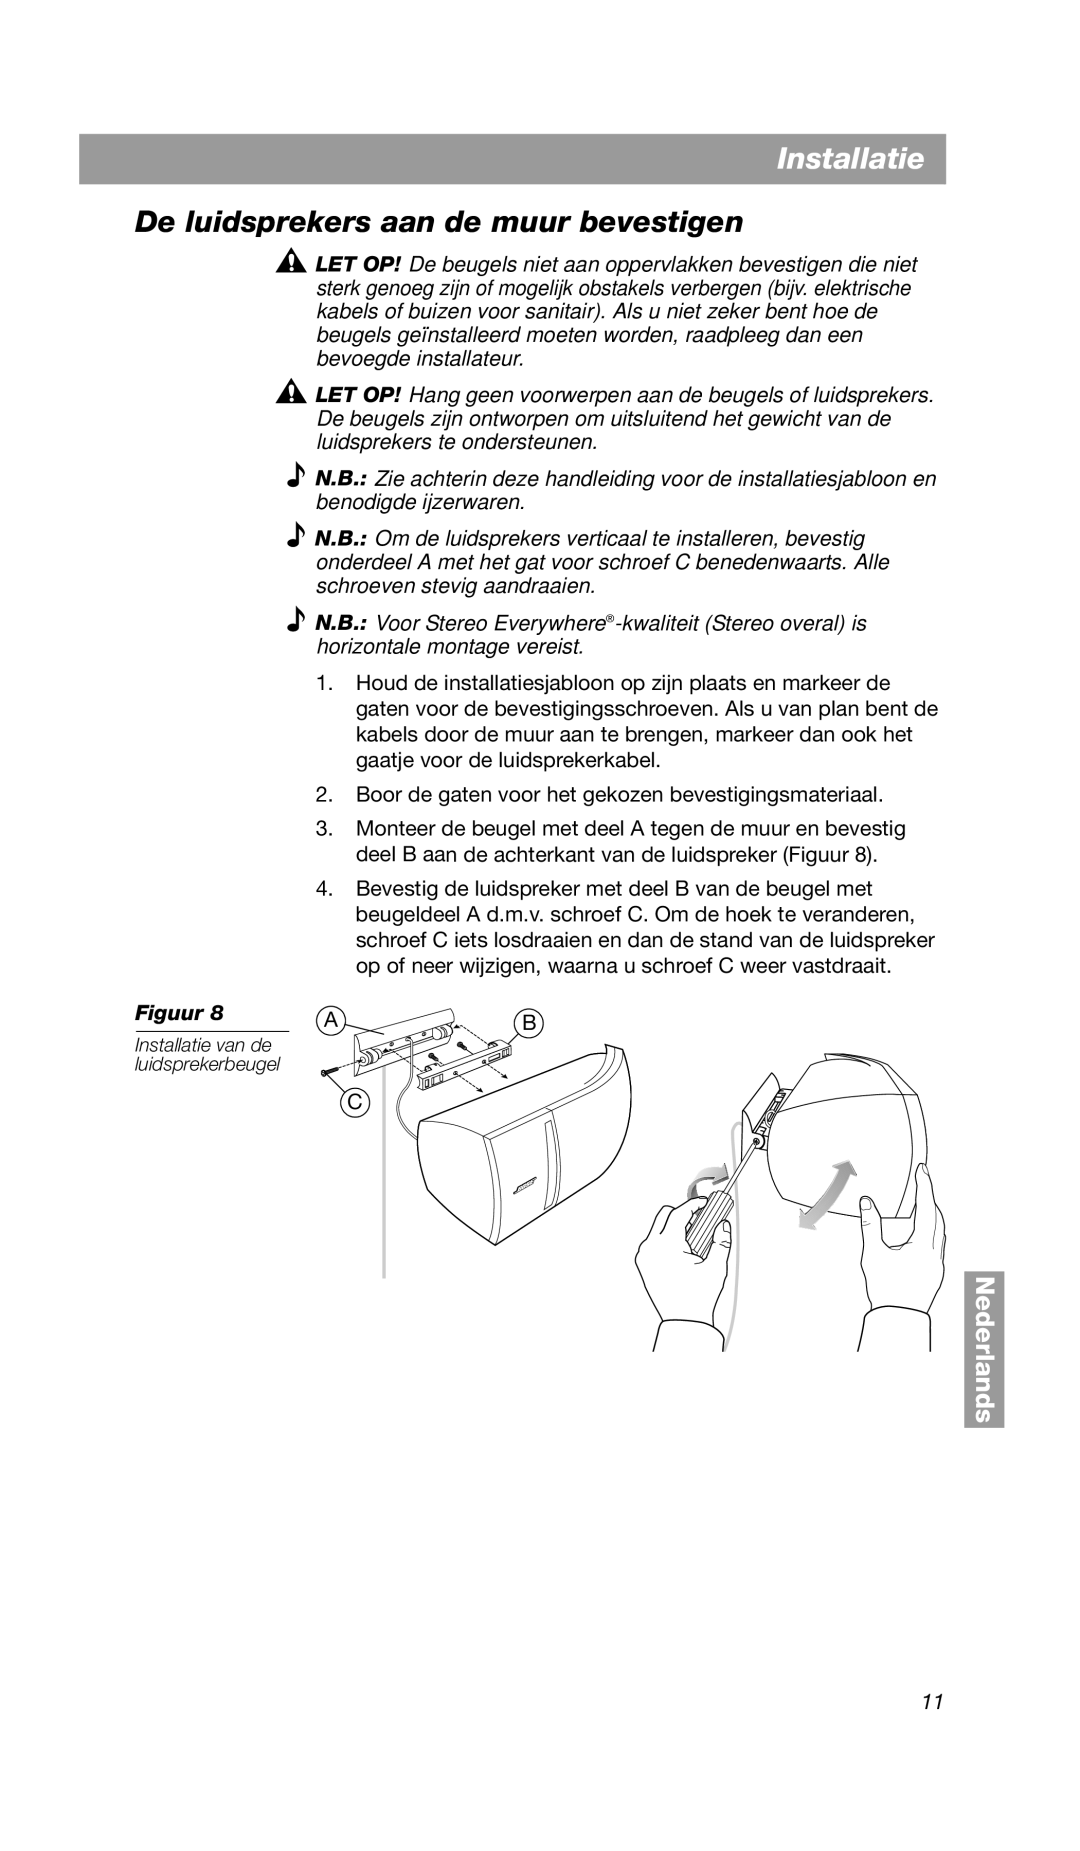 Bose VCS-10 manual De luidsprekers aan de muur bevestigen, Nederlands, Installatie van de luidsprekerbeugel 